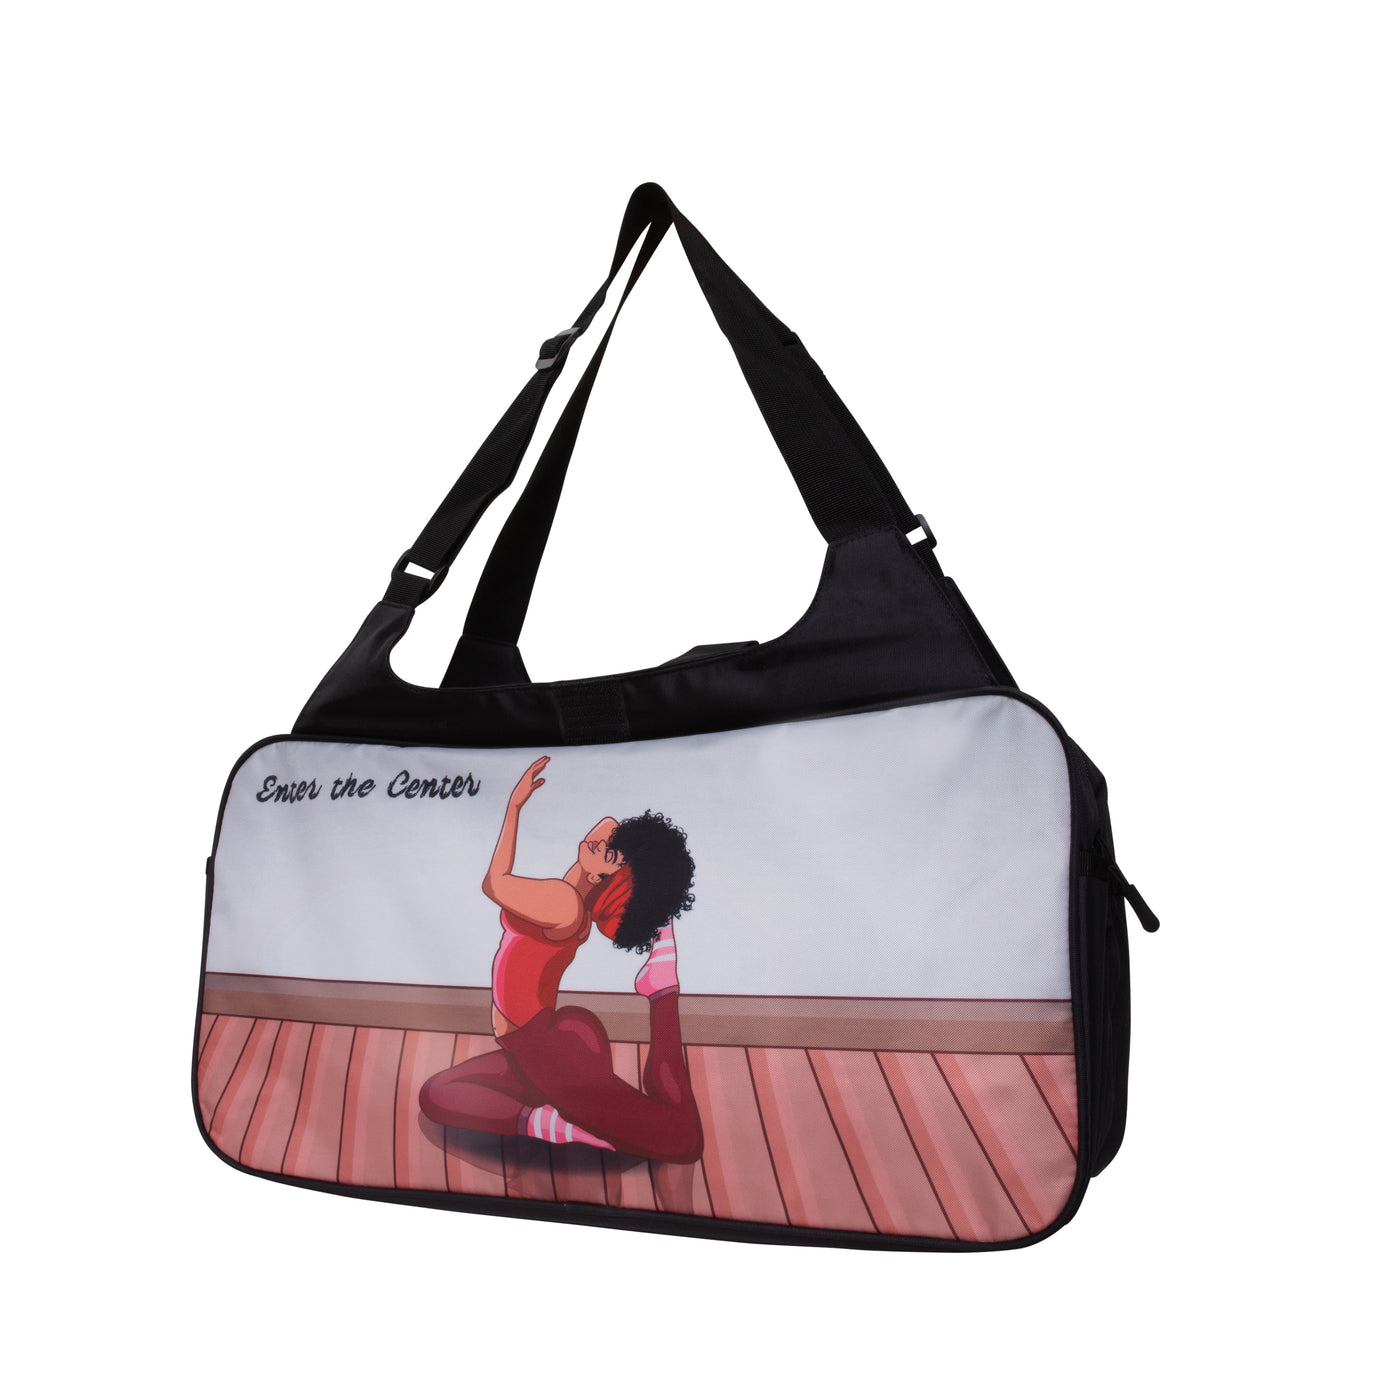 Custom made yoga bag design of woman in yoga pose